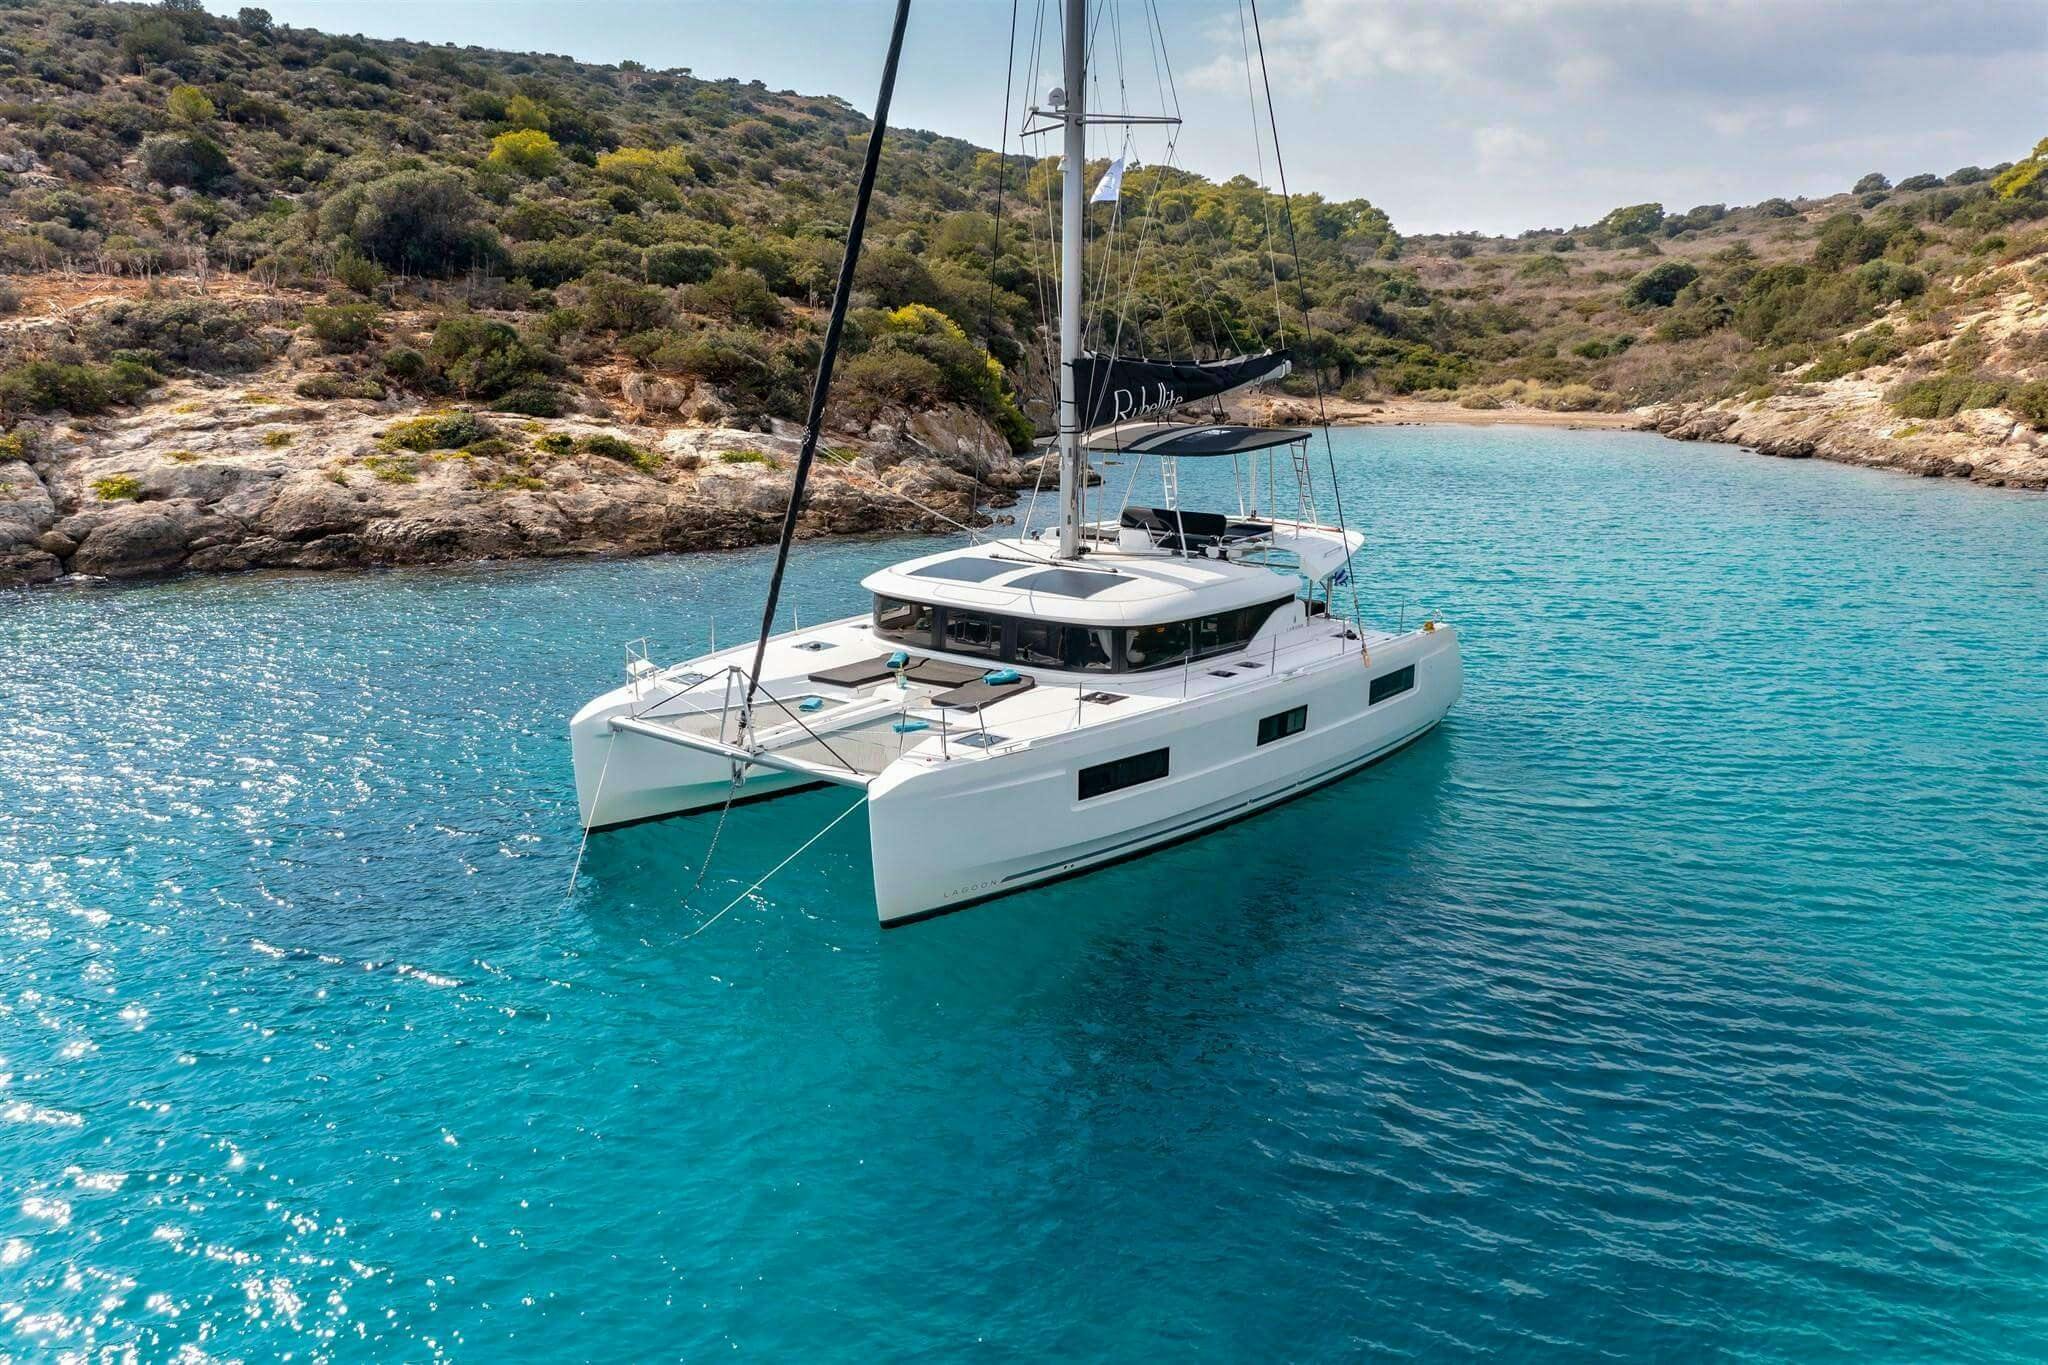 PEPE - Catamaran charter Dubrovnik & Boat hire in Croatia 1